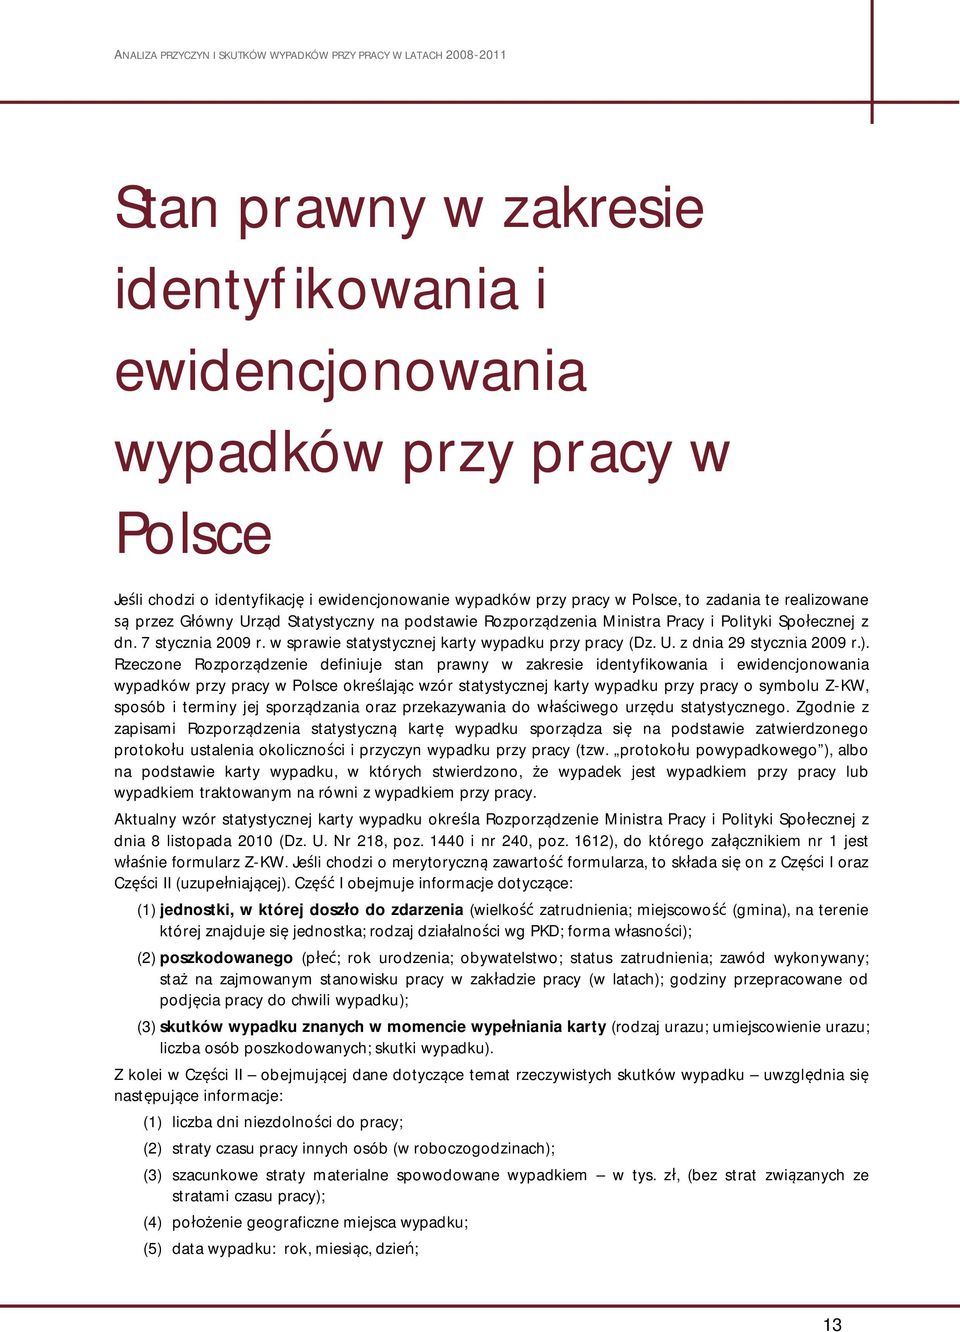 Rzeczone Rozporz dzenie definiuje stan prawny w zakresie identyfikowania i ewidencjonowania wypadków przy pracy w Polsce okre laj c wzór statystycznej karty wypadku przy pracy o symbolu Z-KW, sposób